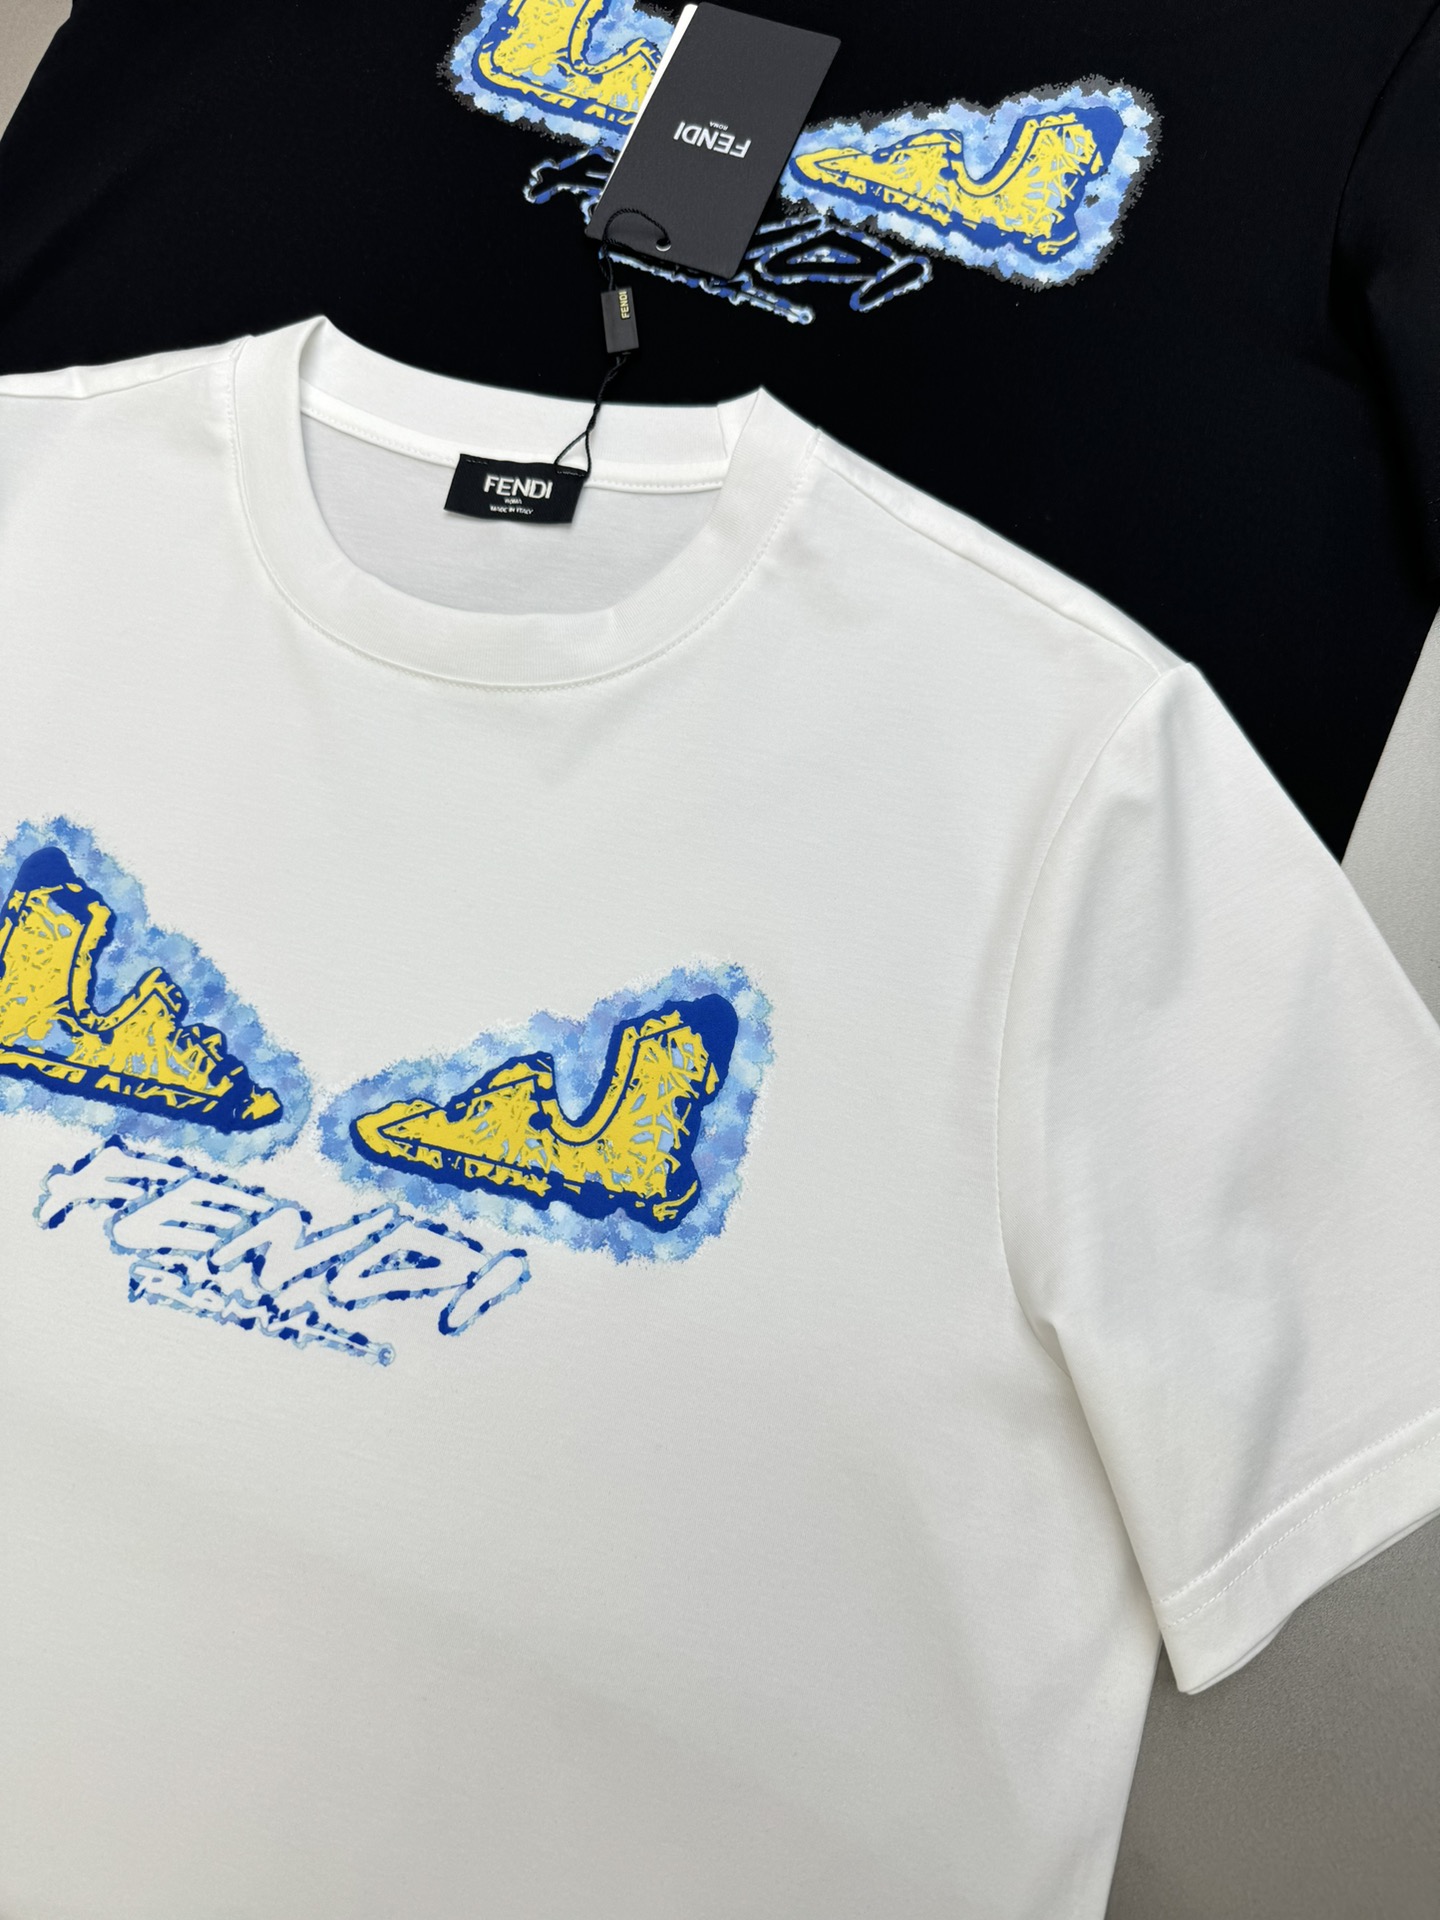 ️小怪兽！炸裂的代码FEND*芬-迪24S春夏新款圆领T恤.涂鸦小怪兽辨识度鲜明超级走心！！！选用客供1